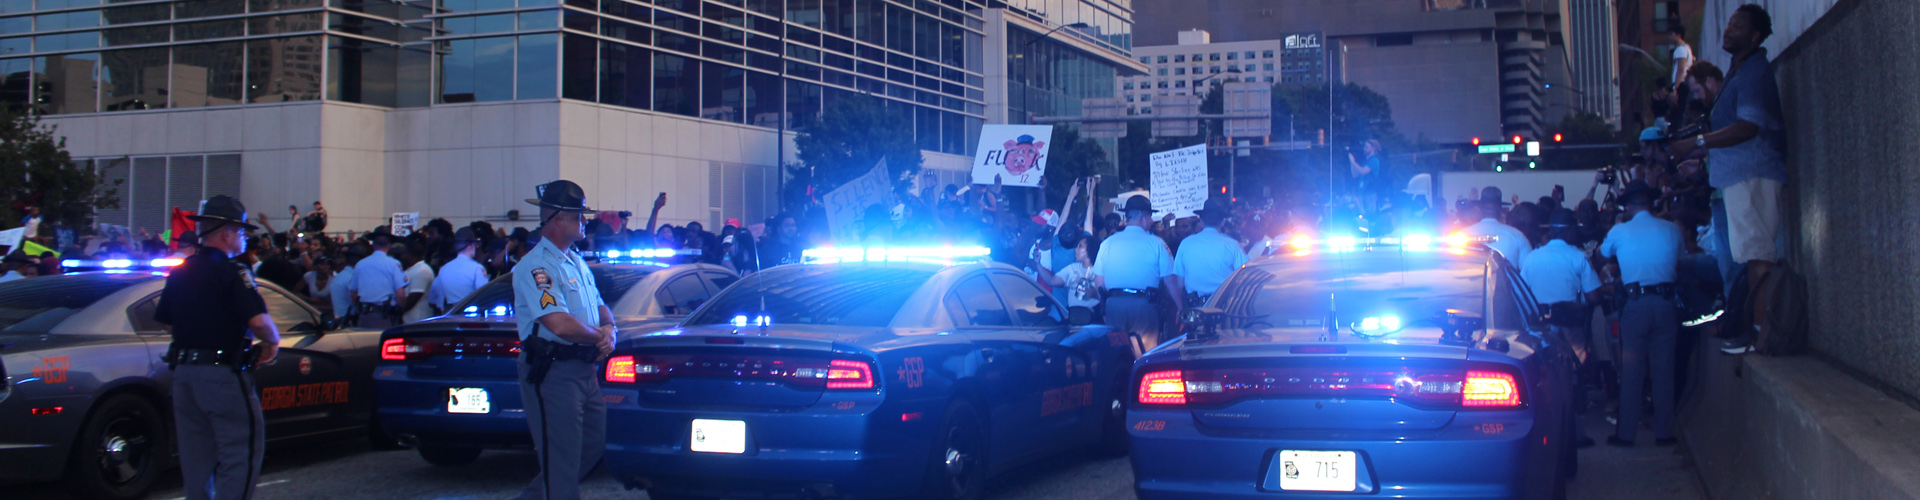  Manifestantes contra brutalidad policial se toman calles de de Atlanta